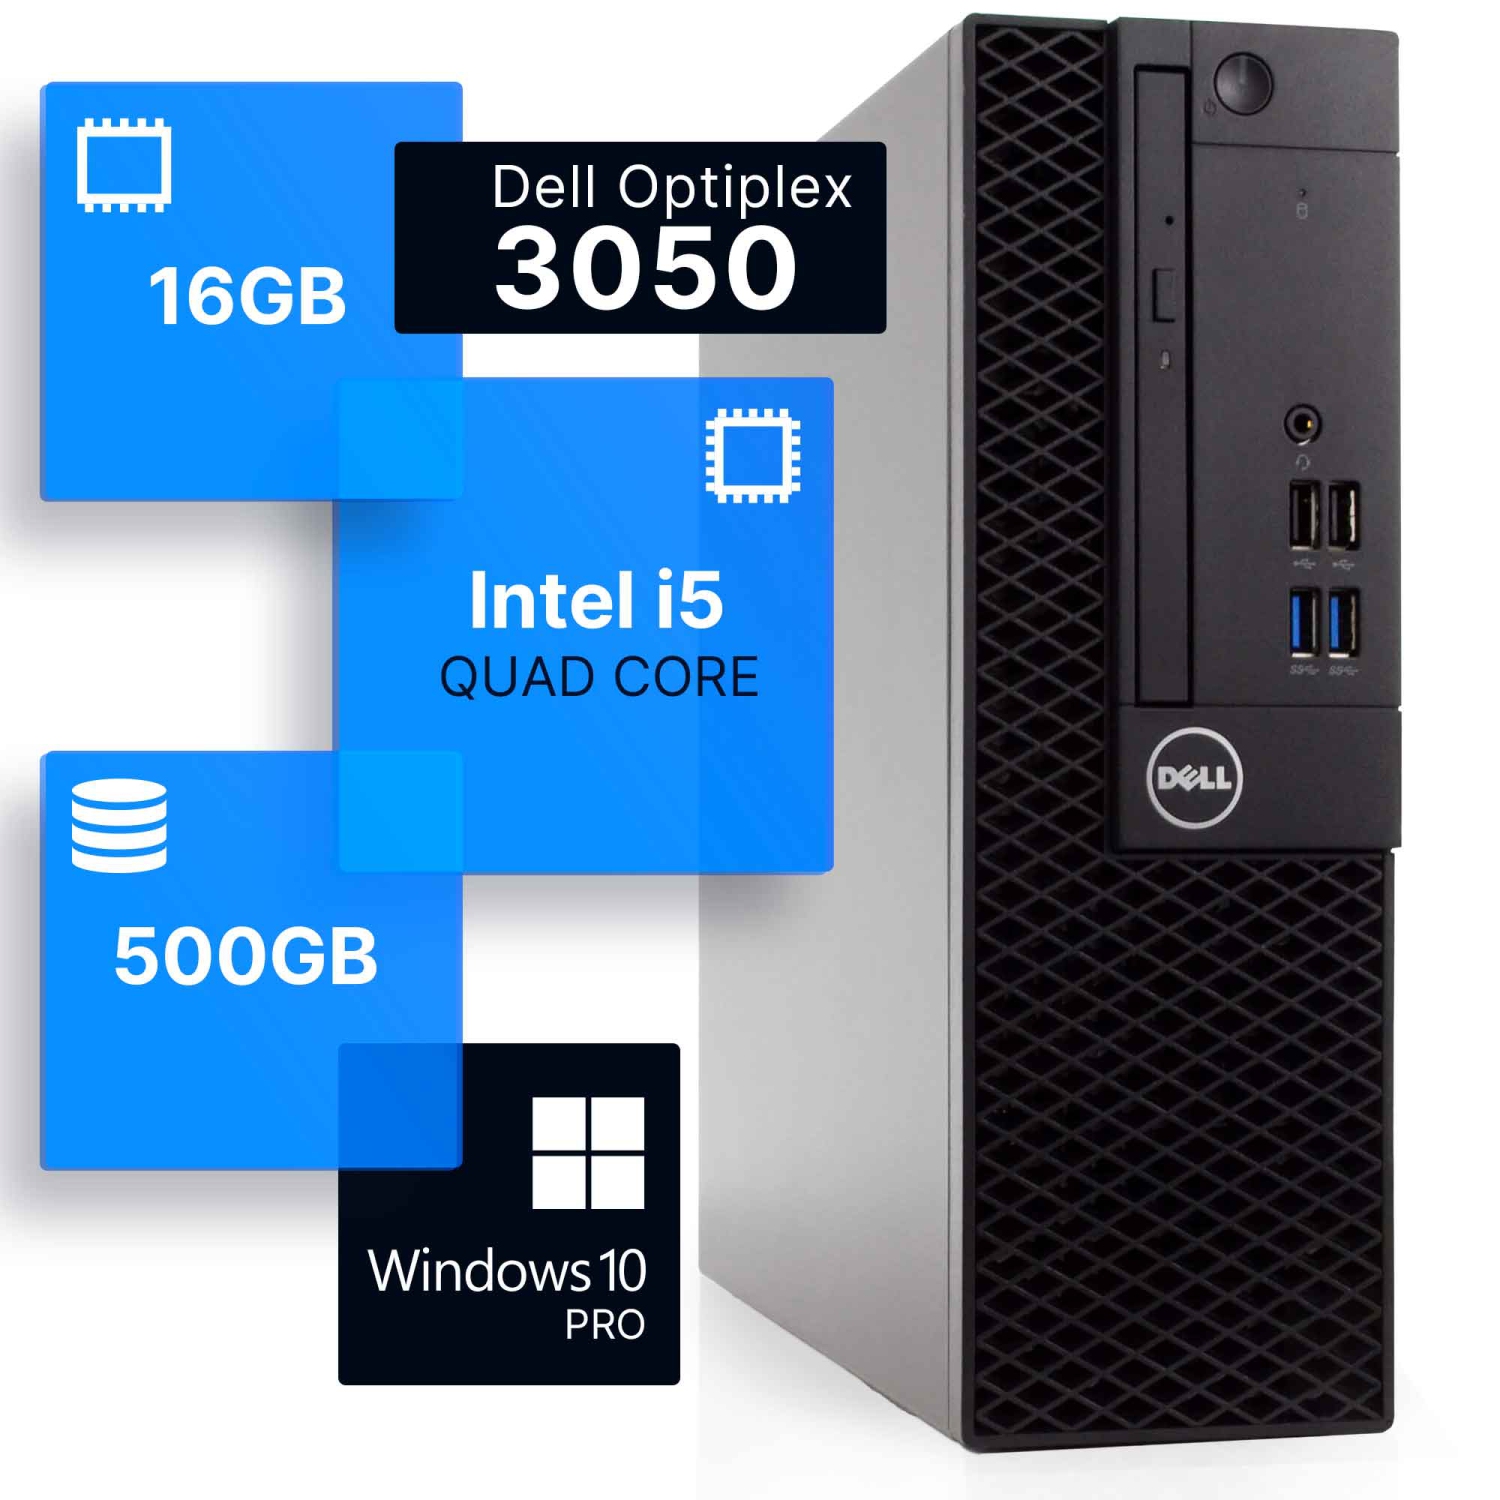 Refurbished (Good) - Dell Optiplex 3050 Desktop Computer | Quad Intel i5 (3.2) Gen 7 | 16GB DDR4 RAM | 500GB SSD | Windows 10 Professional | Built-in Wi-Fi AX200